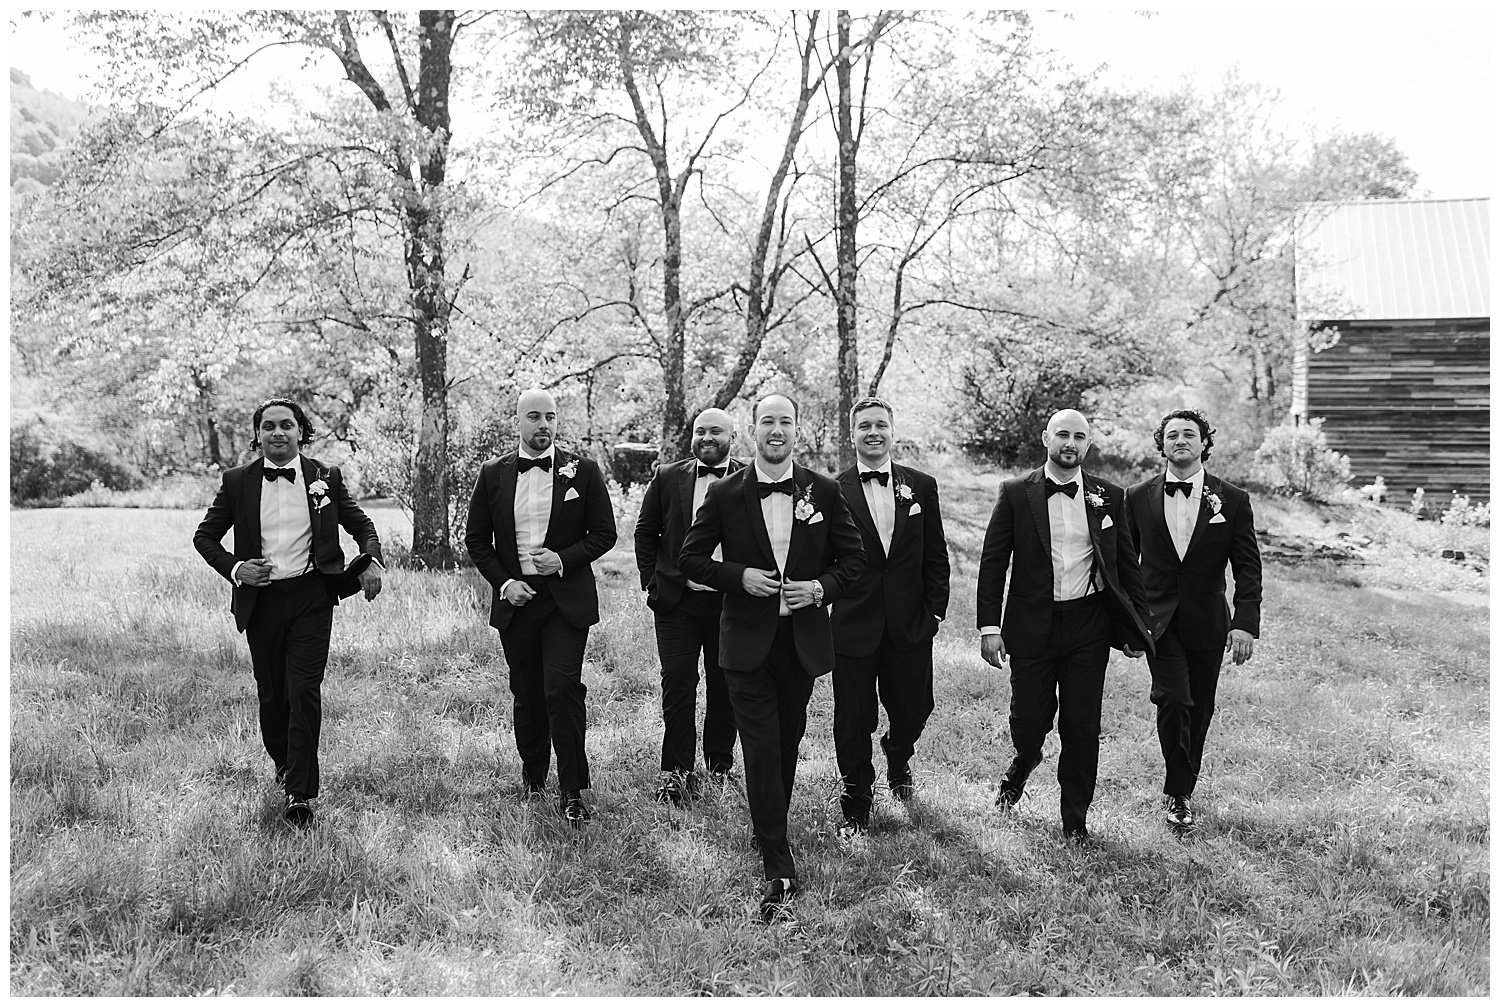 groom and groomsmen in black tie